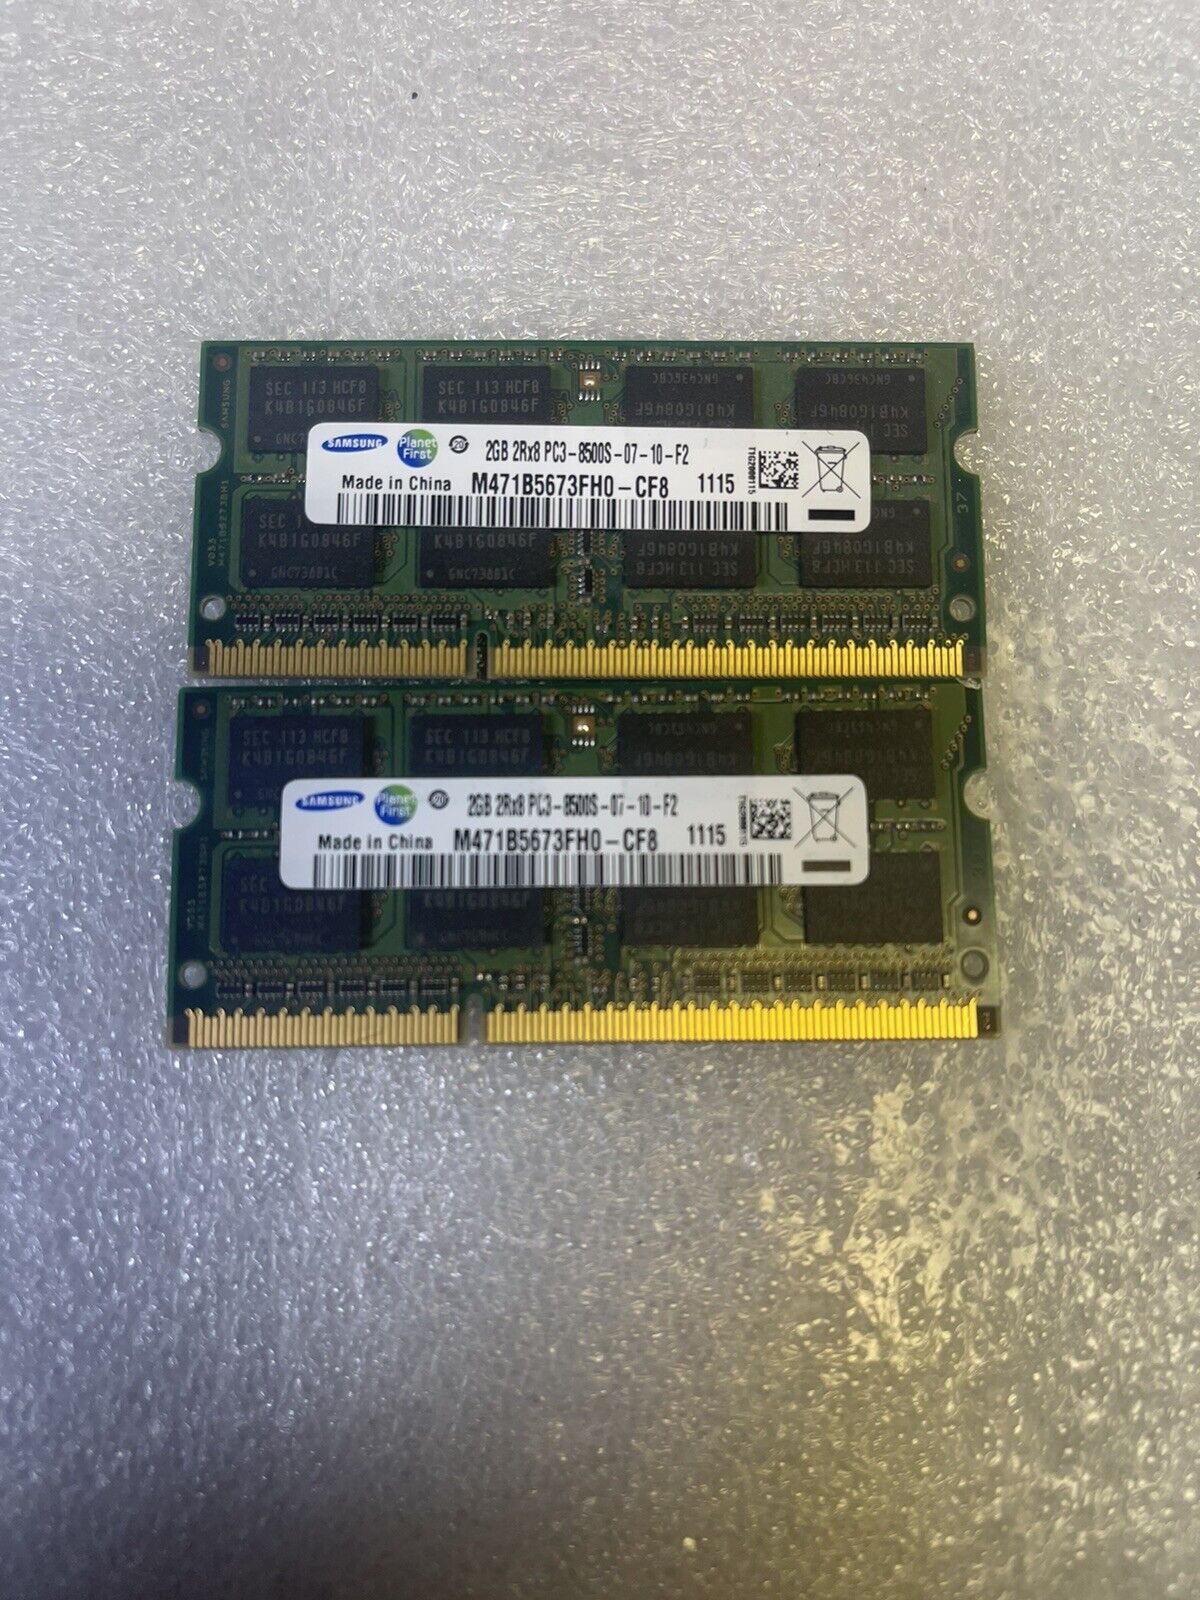 Samsung PC3-8500 4GB 2pcSO-DIMM 1066 MHz PC3-8500 DDR3 Memory (M471B5673FH0-CF8)